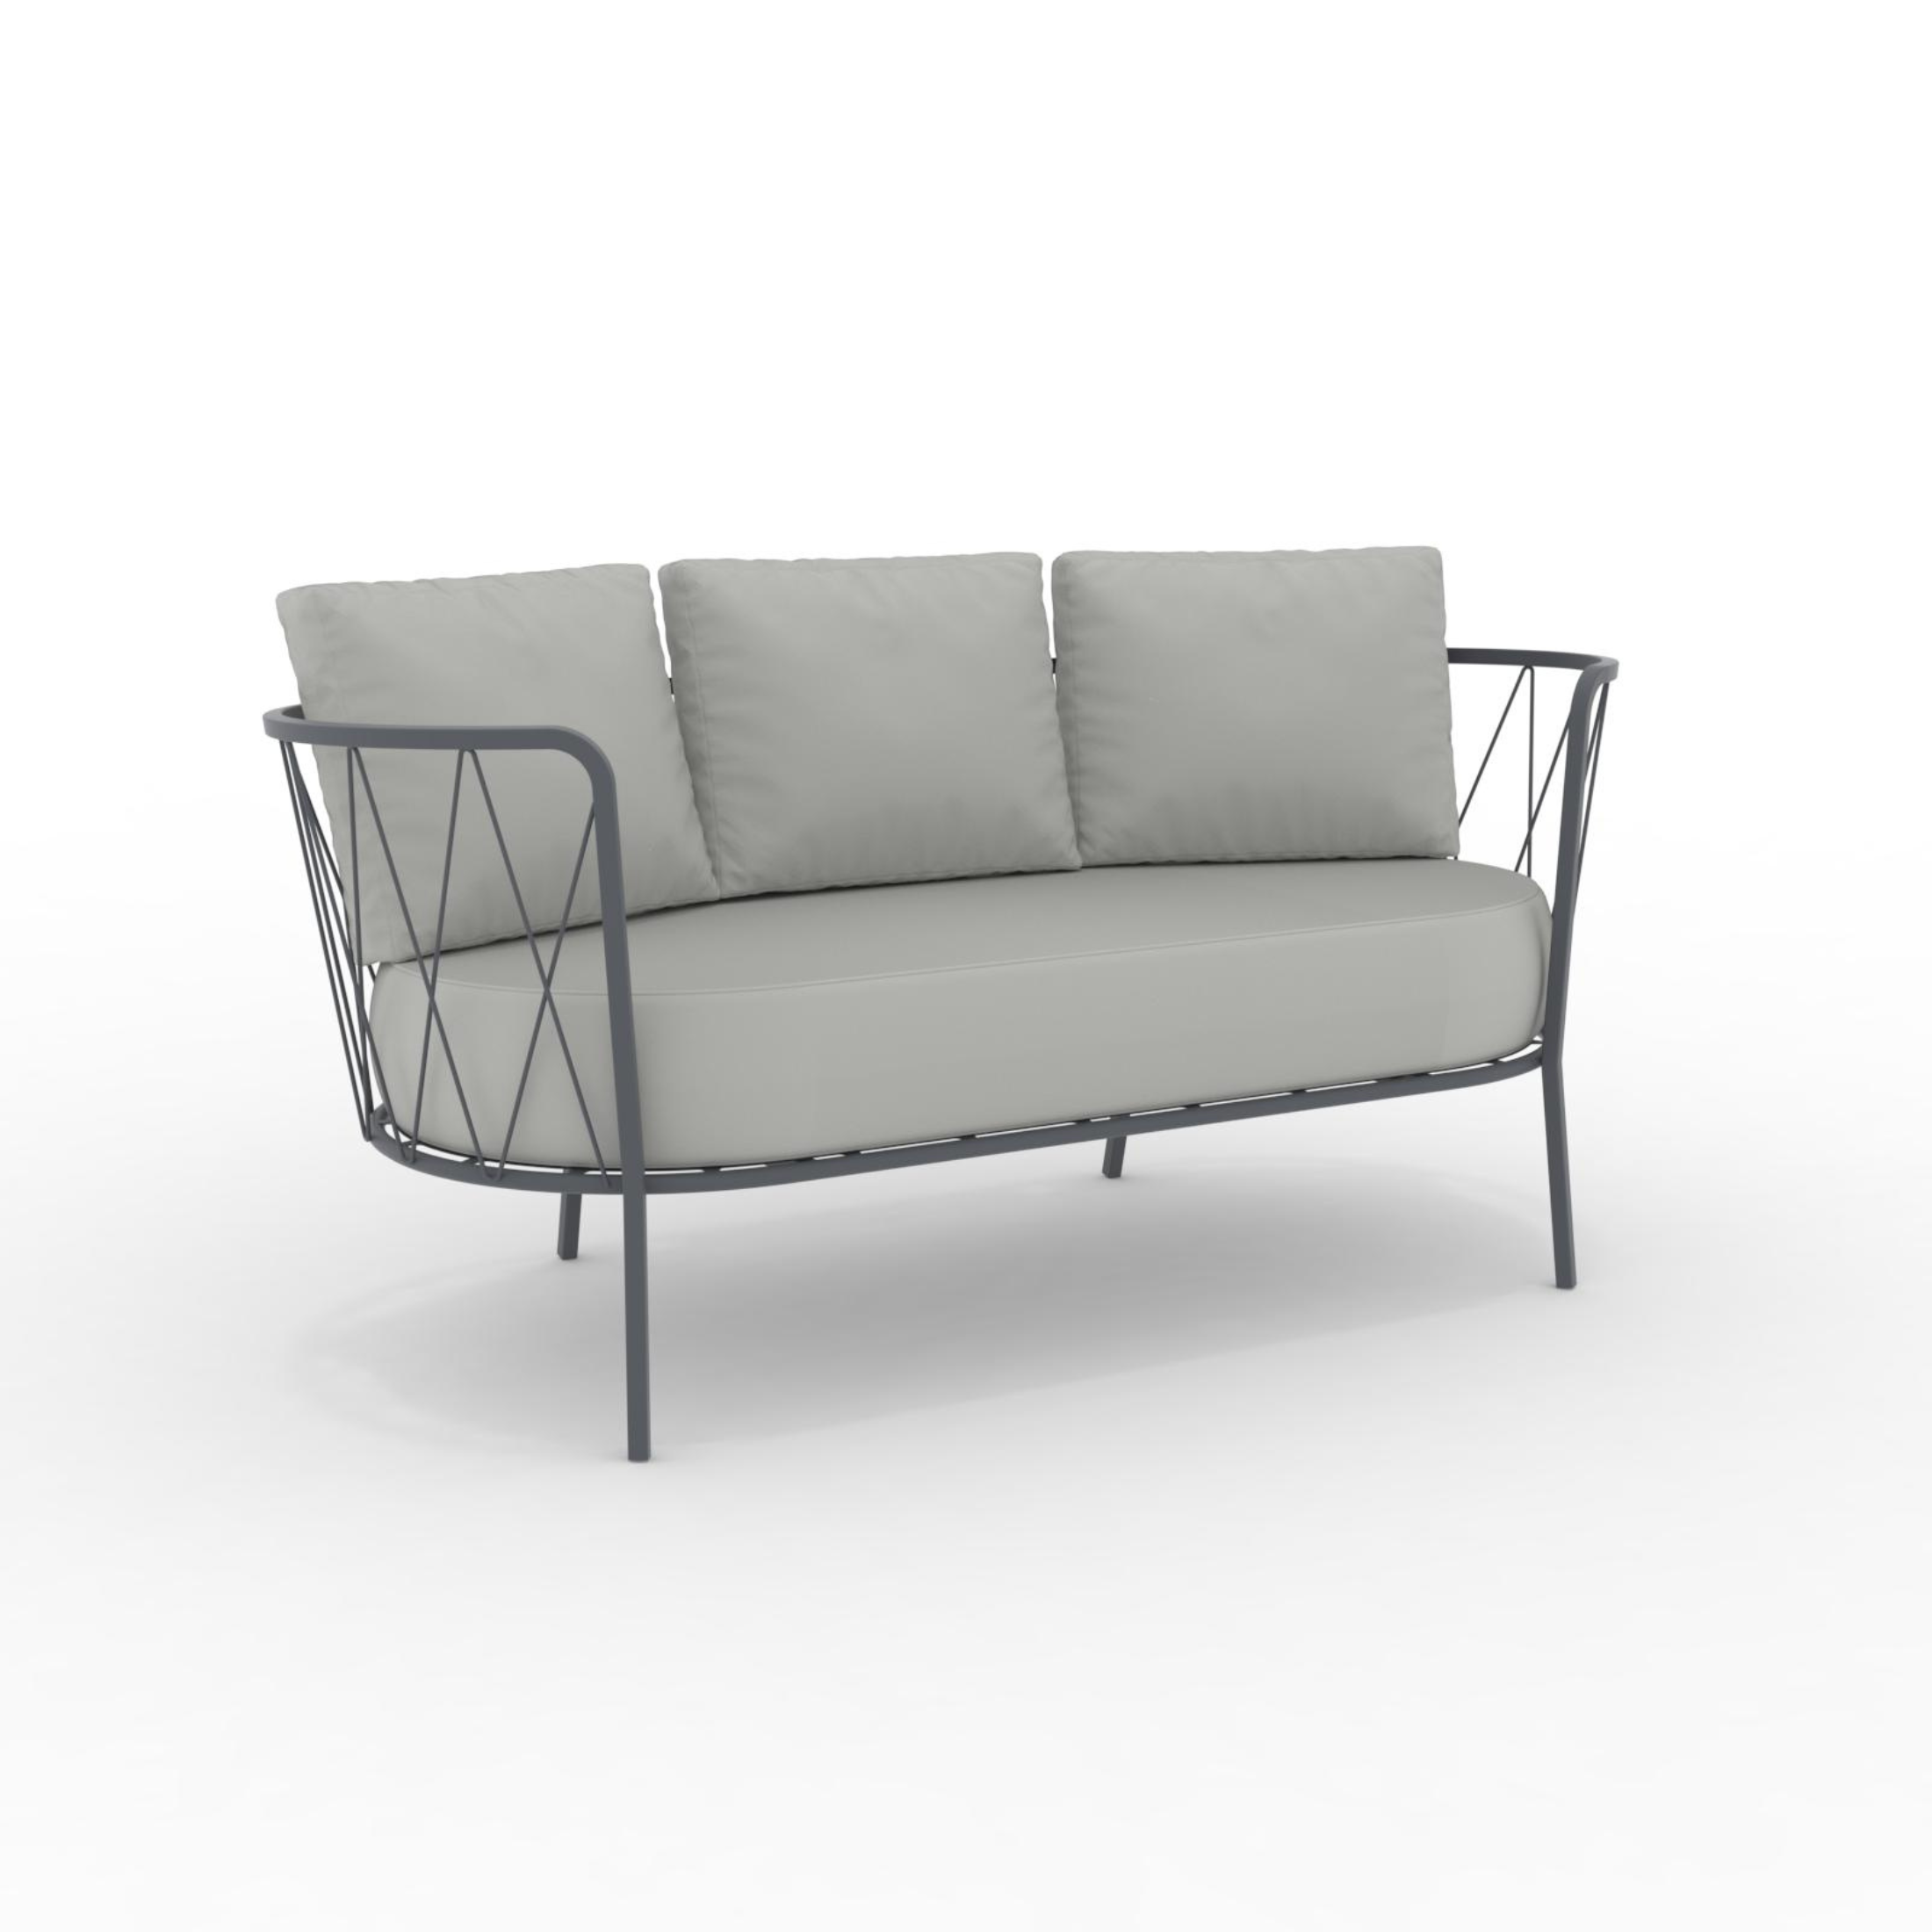 Divano 2 posti in metallo zincato "Daisy13" sedia lounge da giardino cm 160x73 71h